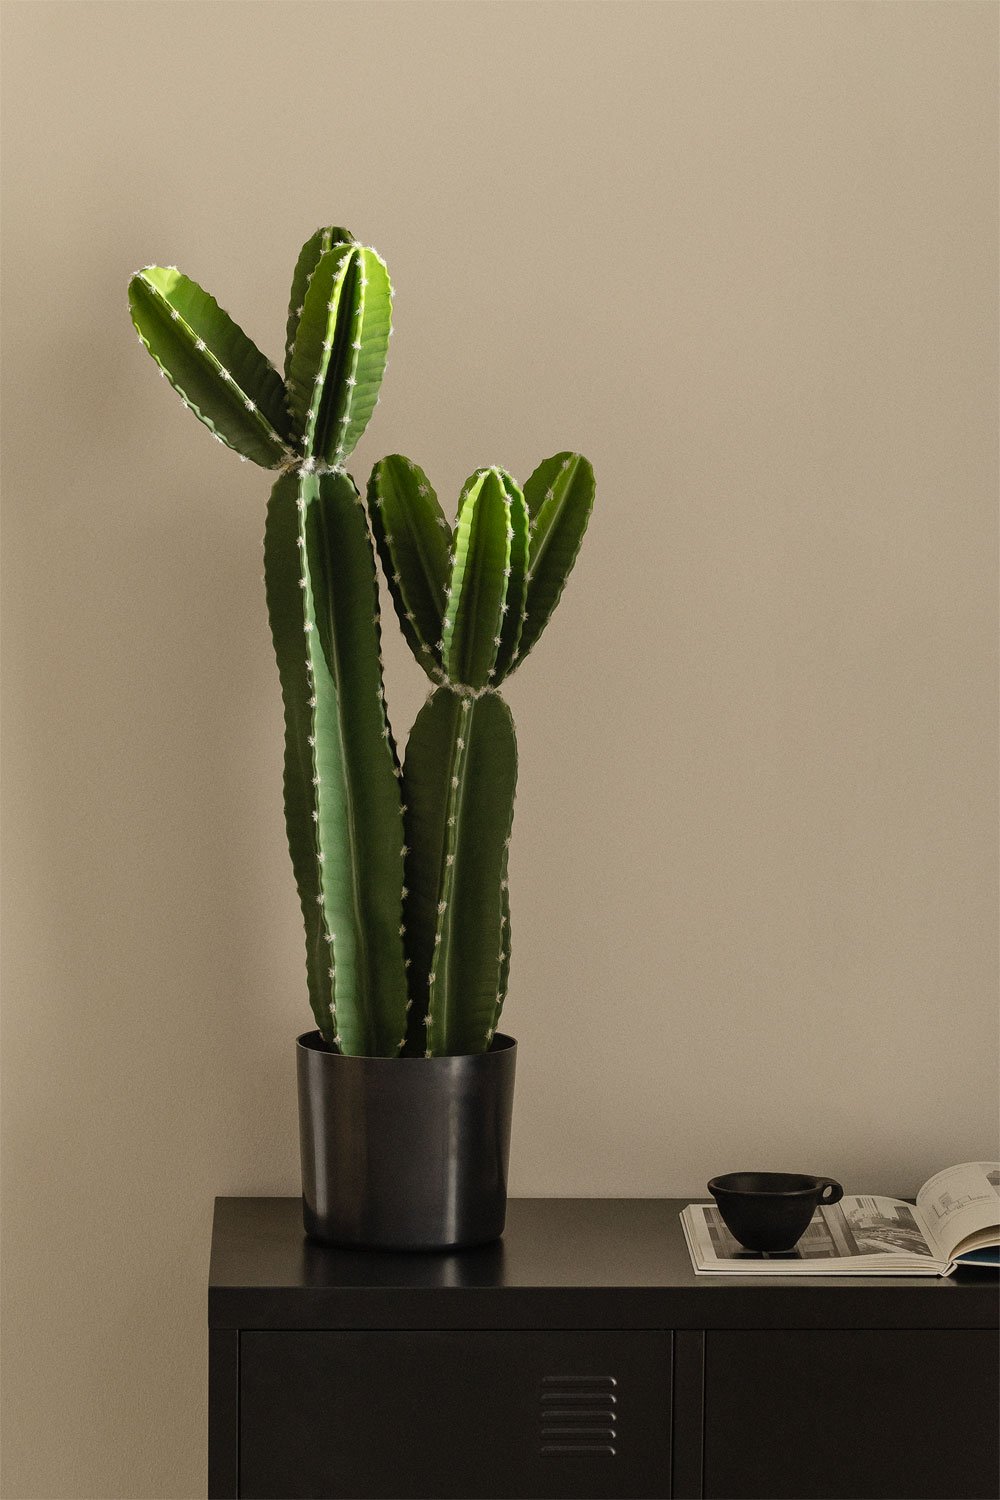 Cactus artificiale Cereus Design 86 cm, immagine della galleria 1